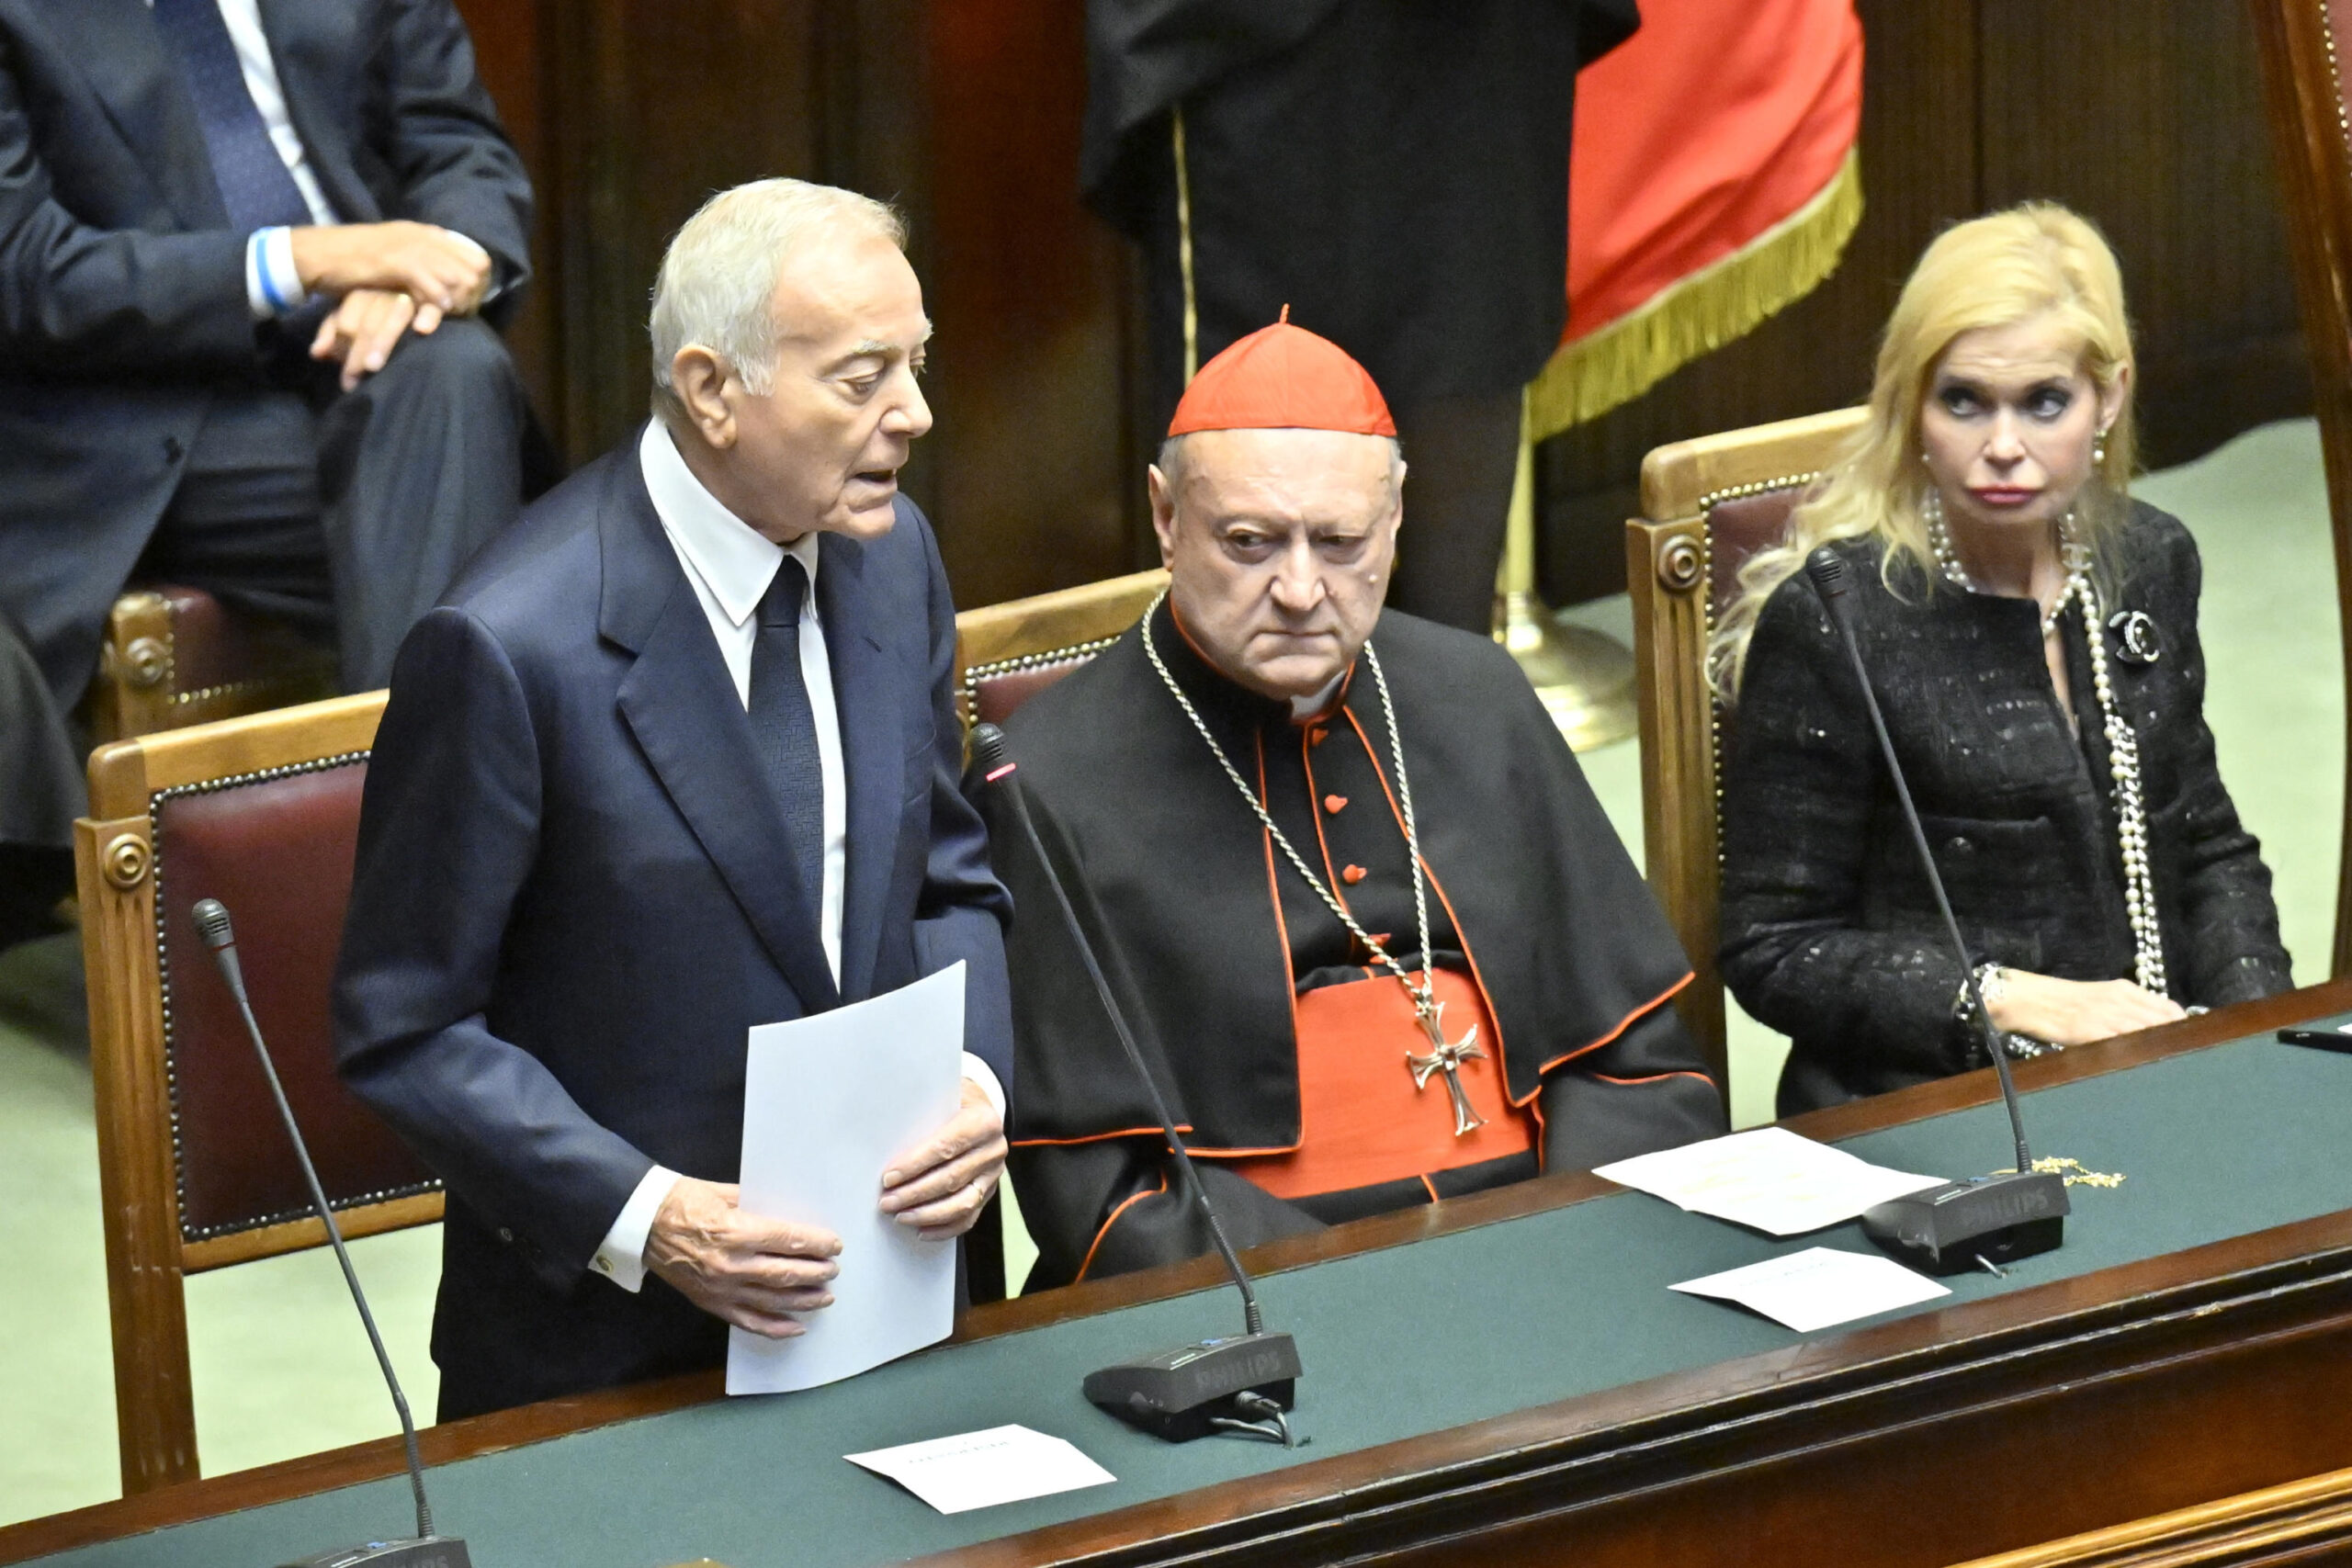 Funerali di Napolitano, l’auspicio di Gianni Letta: «Spero che lassù si plachi la polemica con Berlusconi e i due possano chiarirsi» – Il video